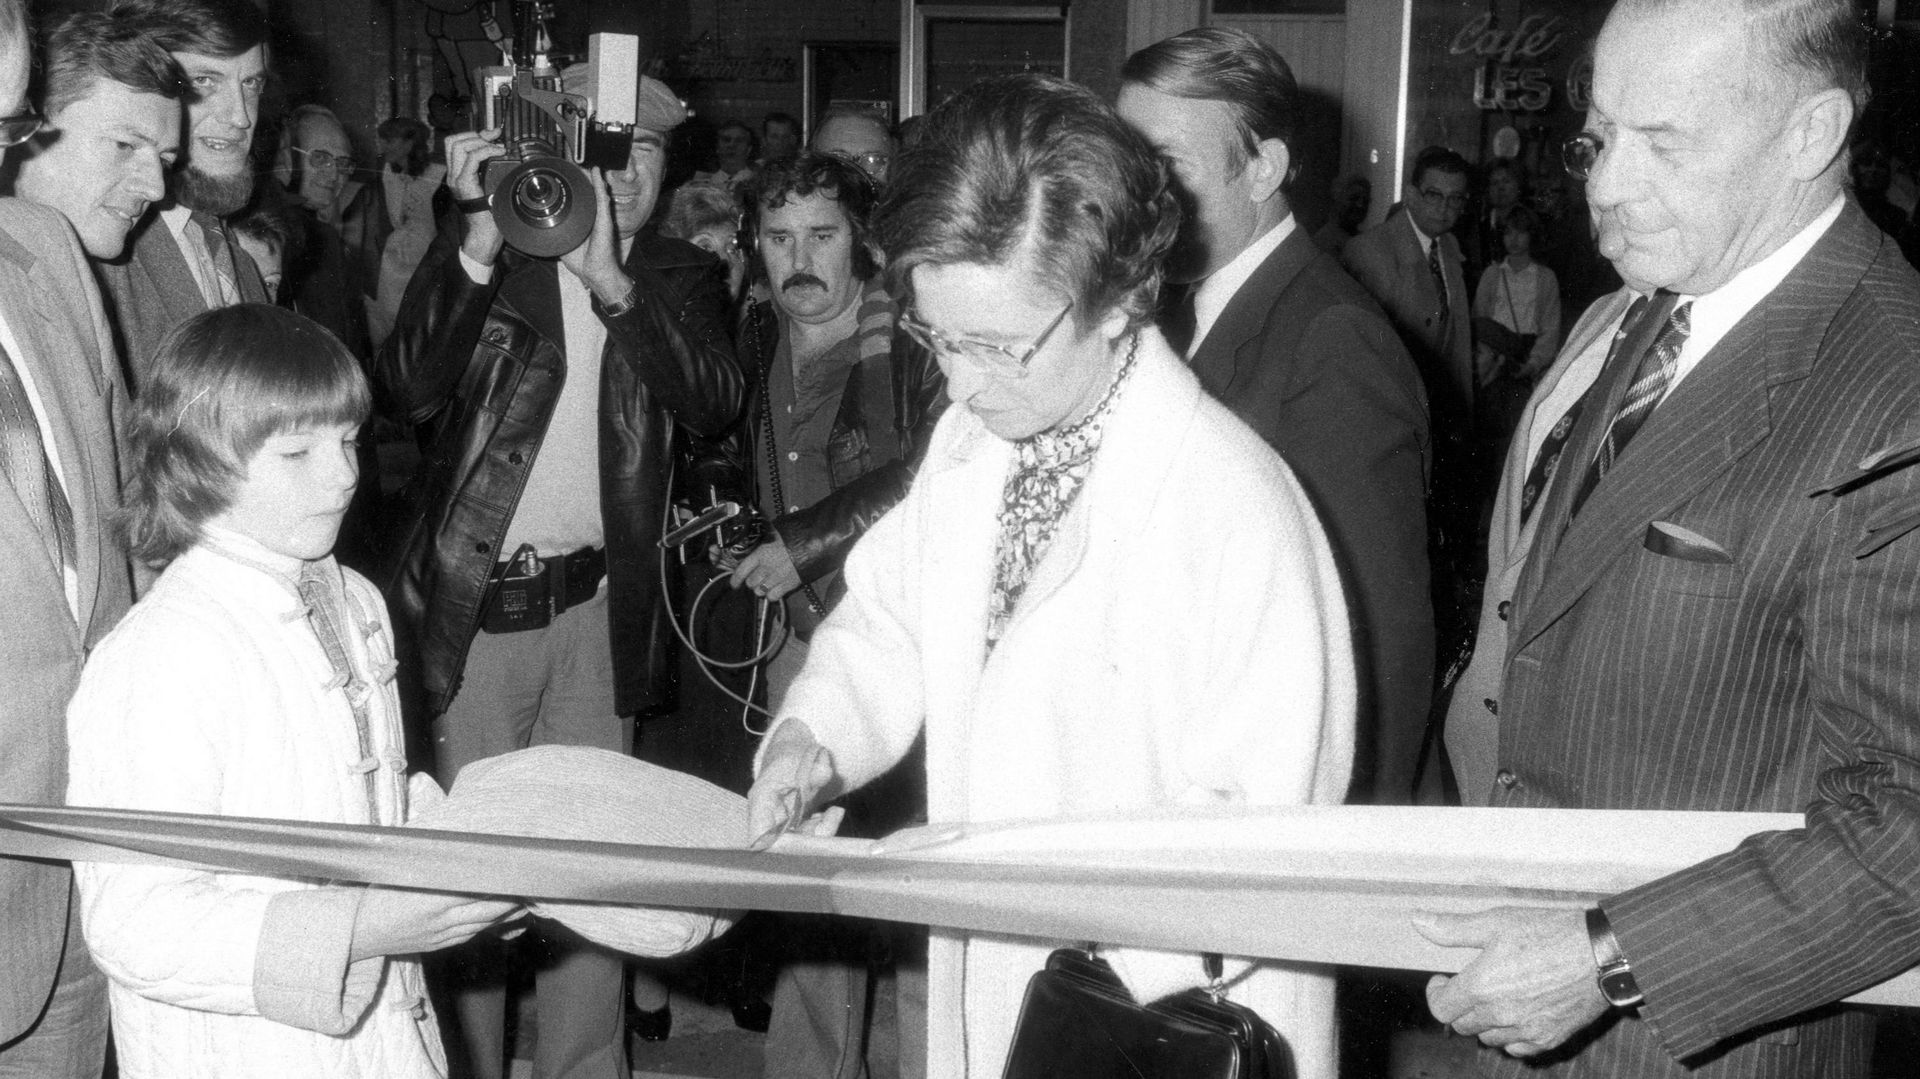 La secrétaire d'Etat de la Communauté flamande Rika Steyaert durant l’inauguration de l'AB en 1979.